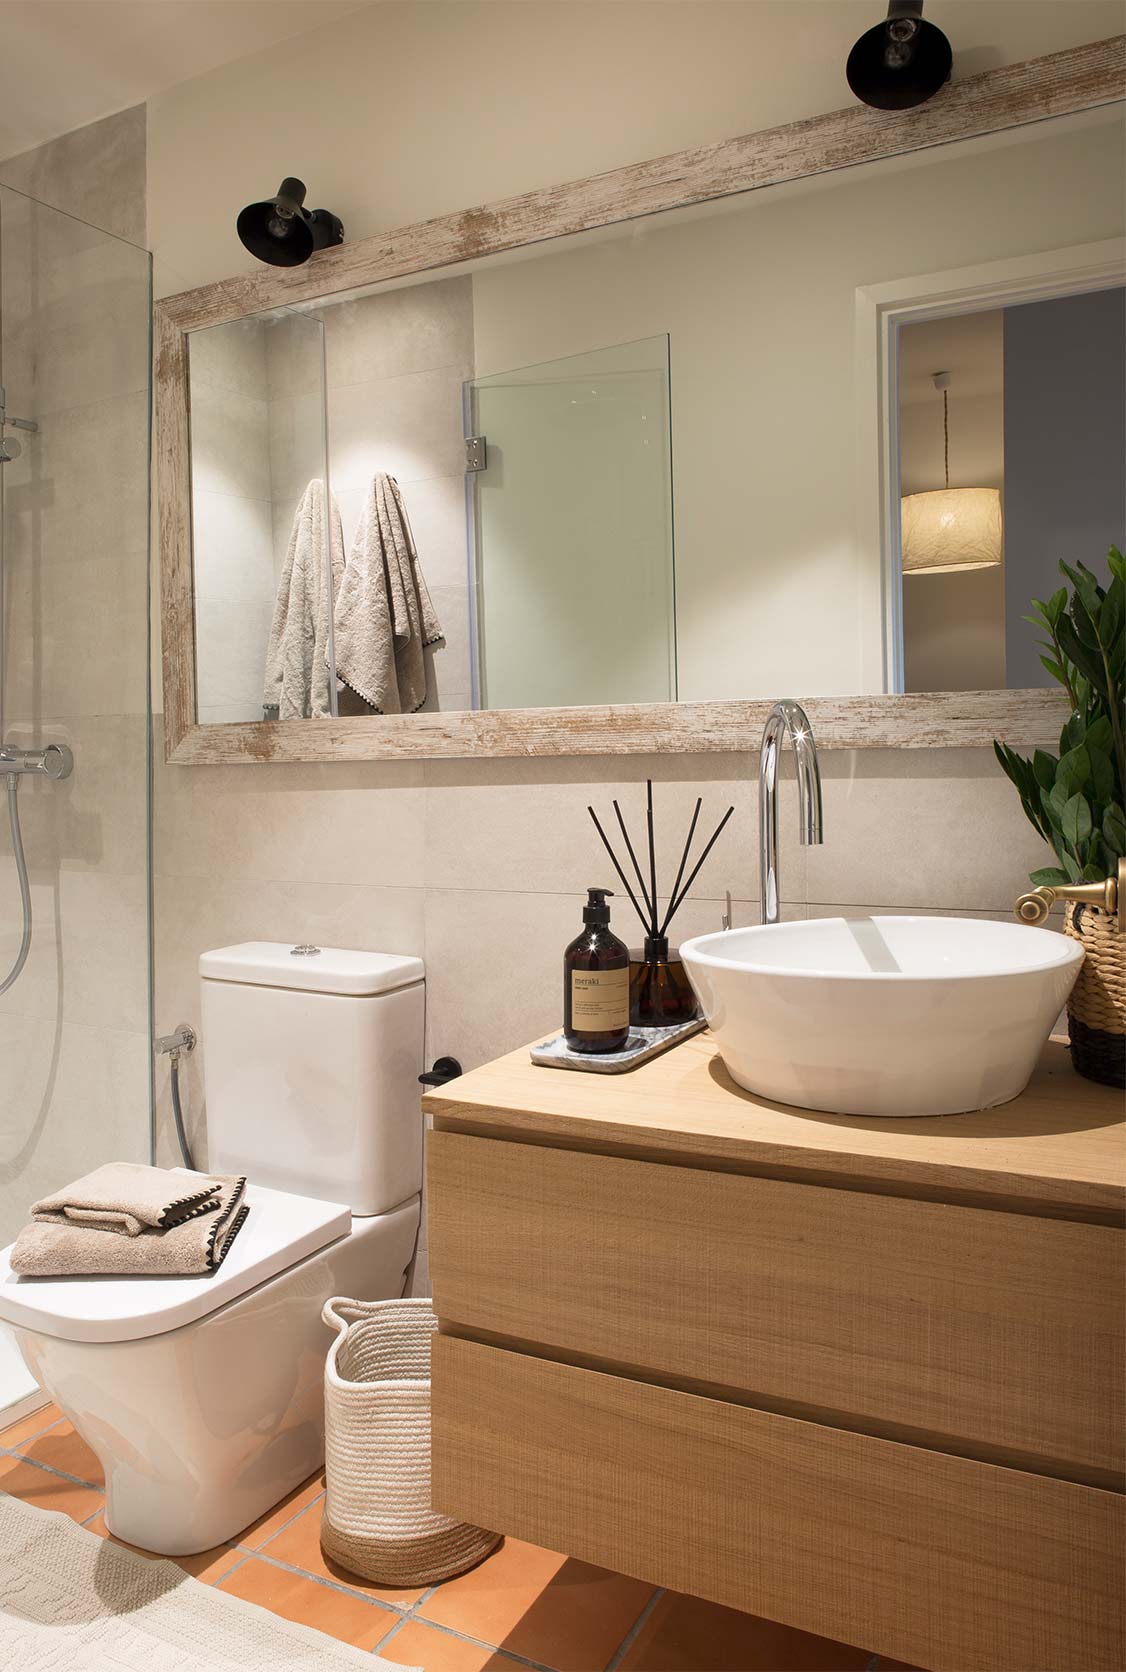 Accesorios para renovar tu baño y convertirlo en un espacio relajante